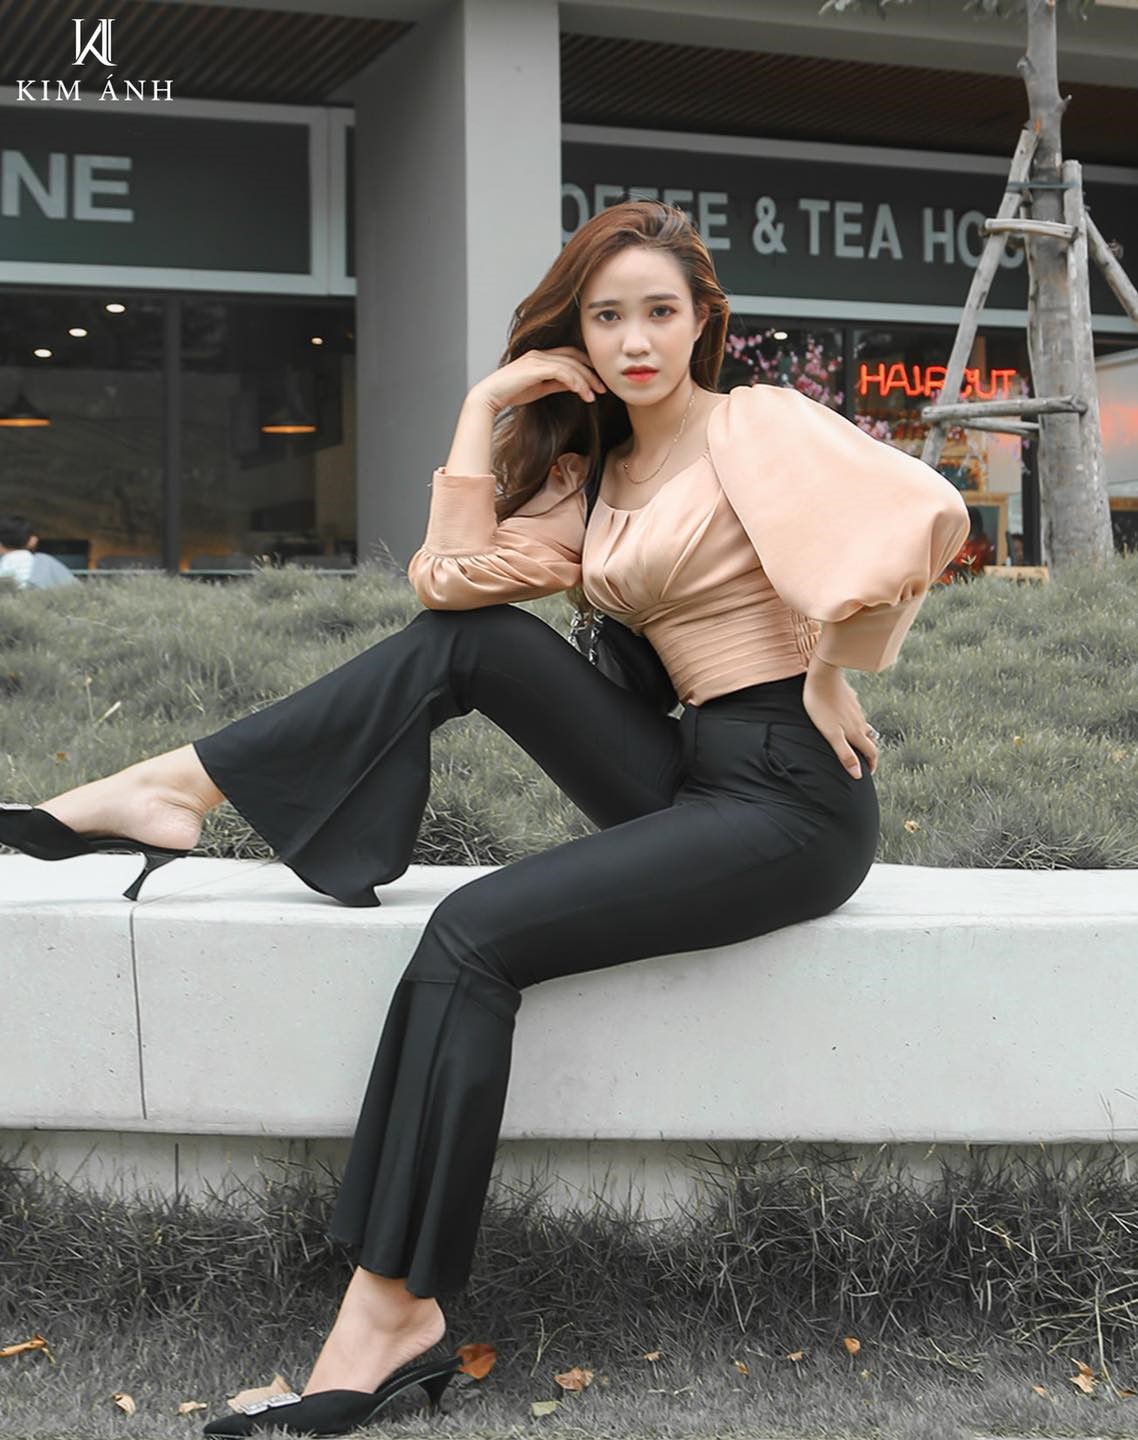 Thời trang Kim Ánh – xưởng gia công trang phục sỉ lẻ quy mô lớn